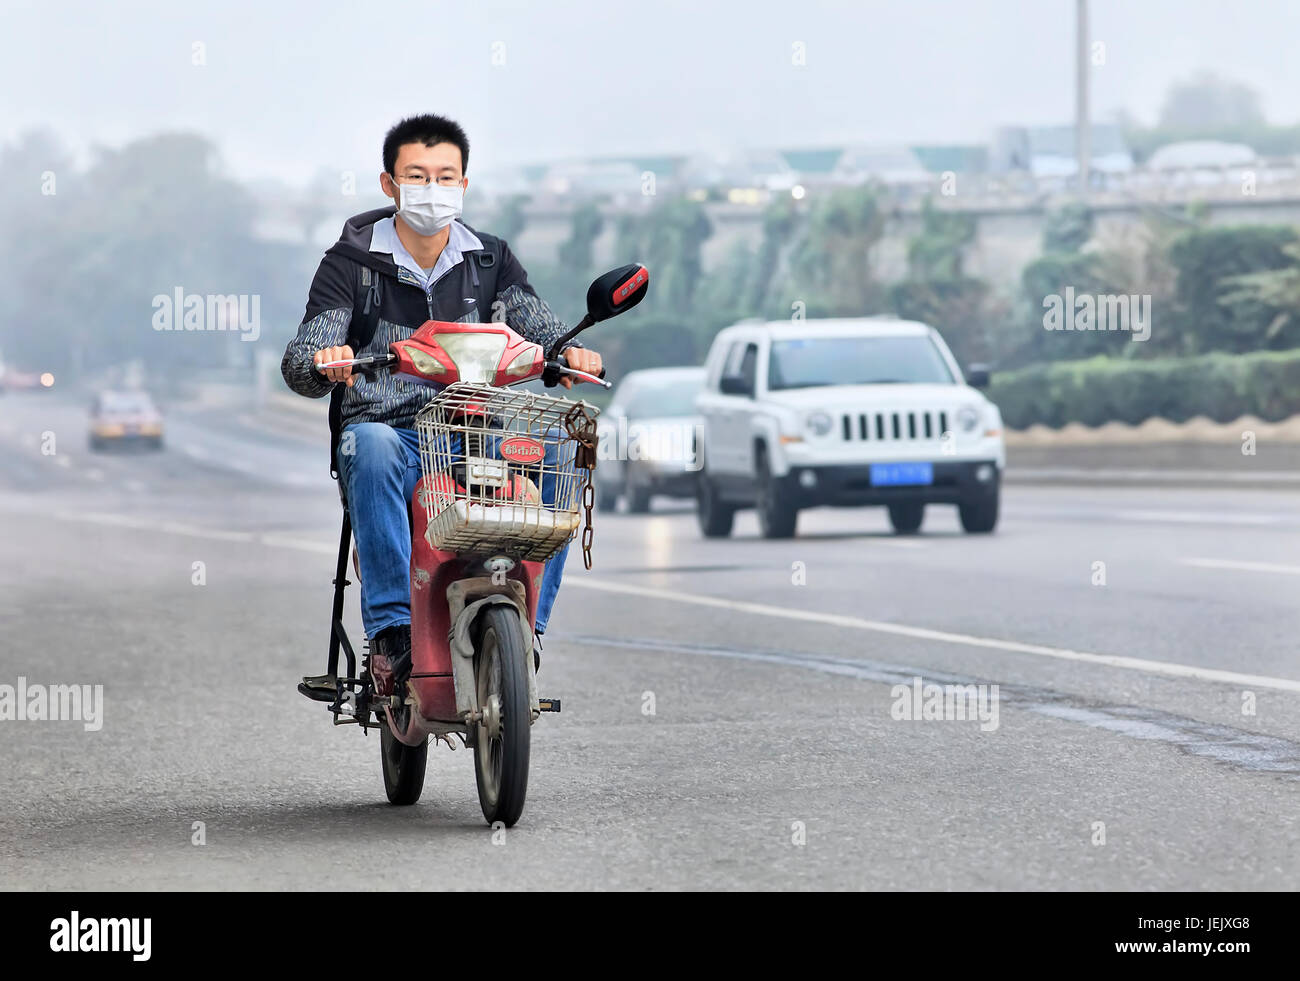 PECHINO - OTT. 6. Il giovane su una bicicletta elettrica copre la sua bocca contro lo smog. Il monitoraggio presso l'ambasciata degli Stati Uniti ha dimostrato che l'aria di Pechino è stata molto malsana. Foto Stock